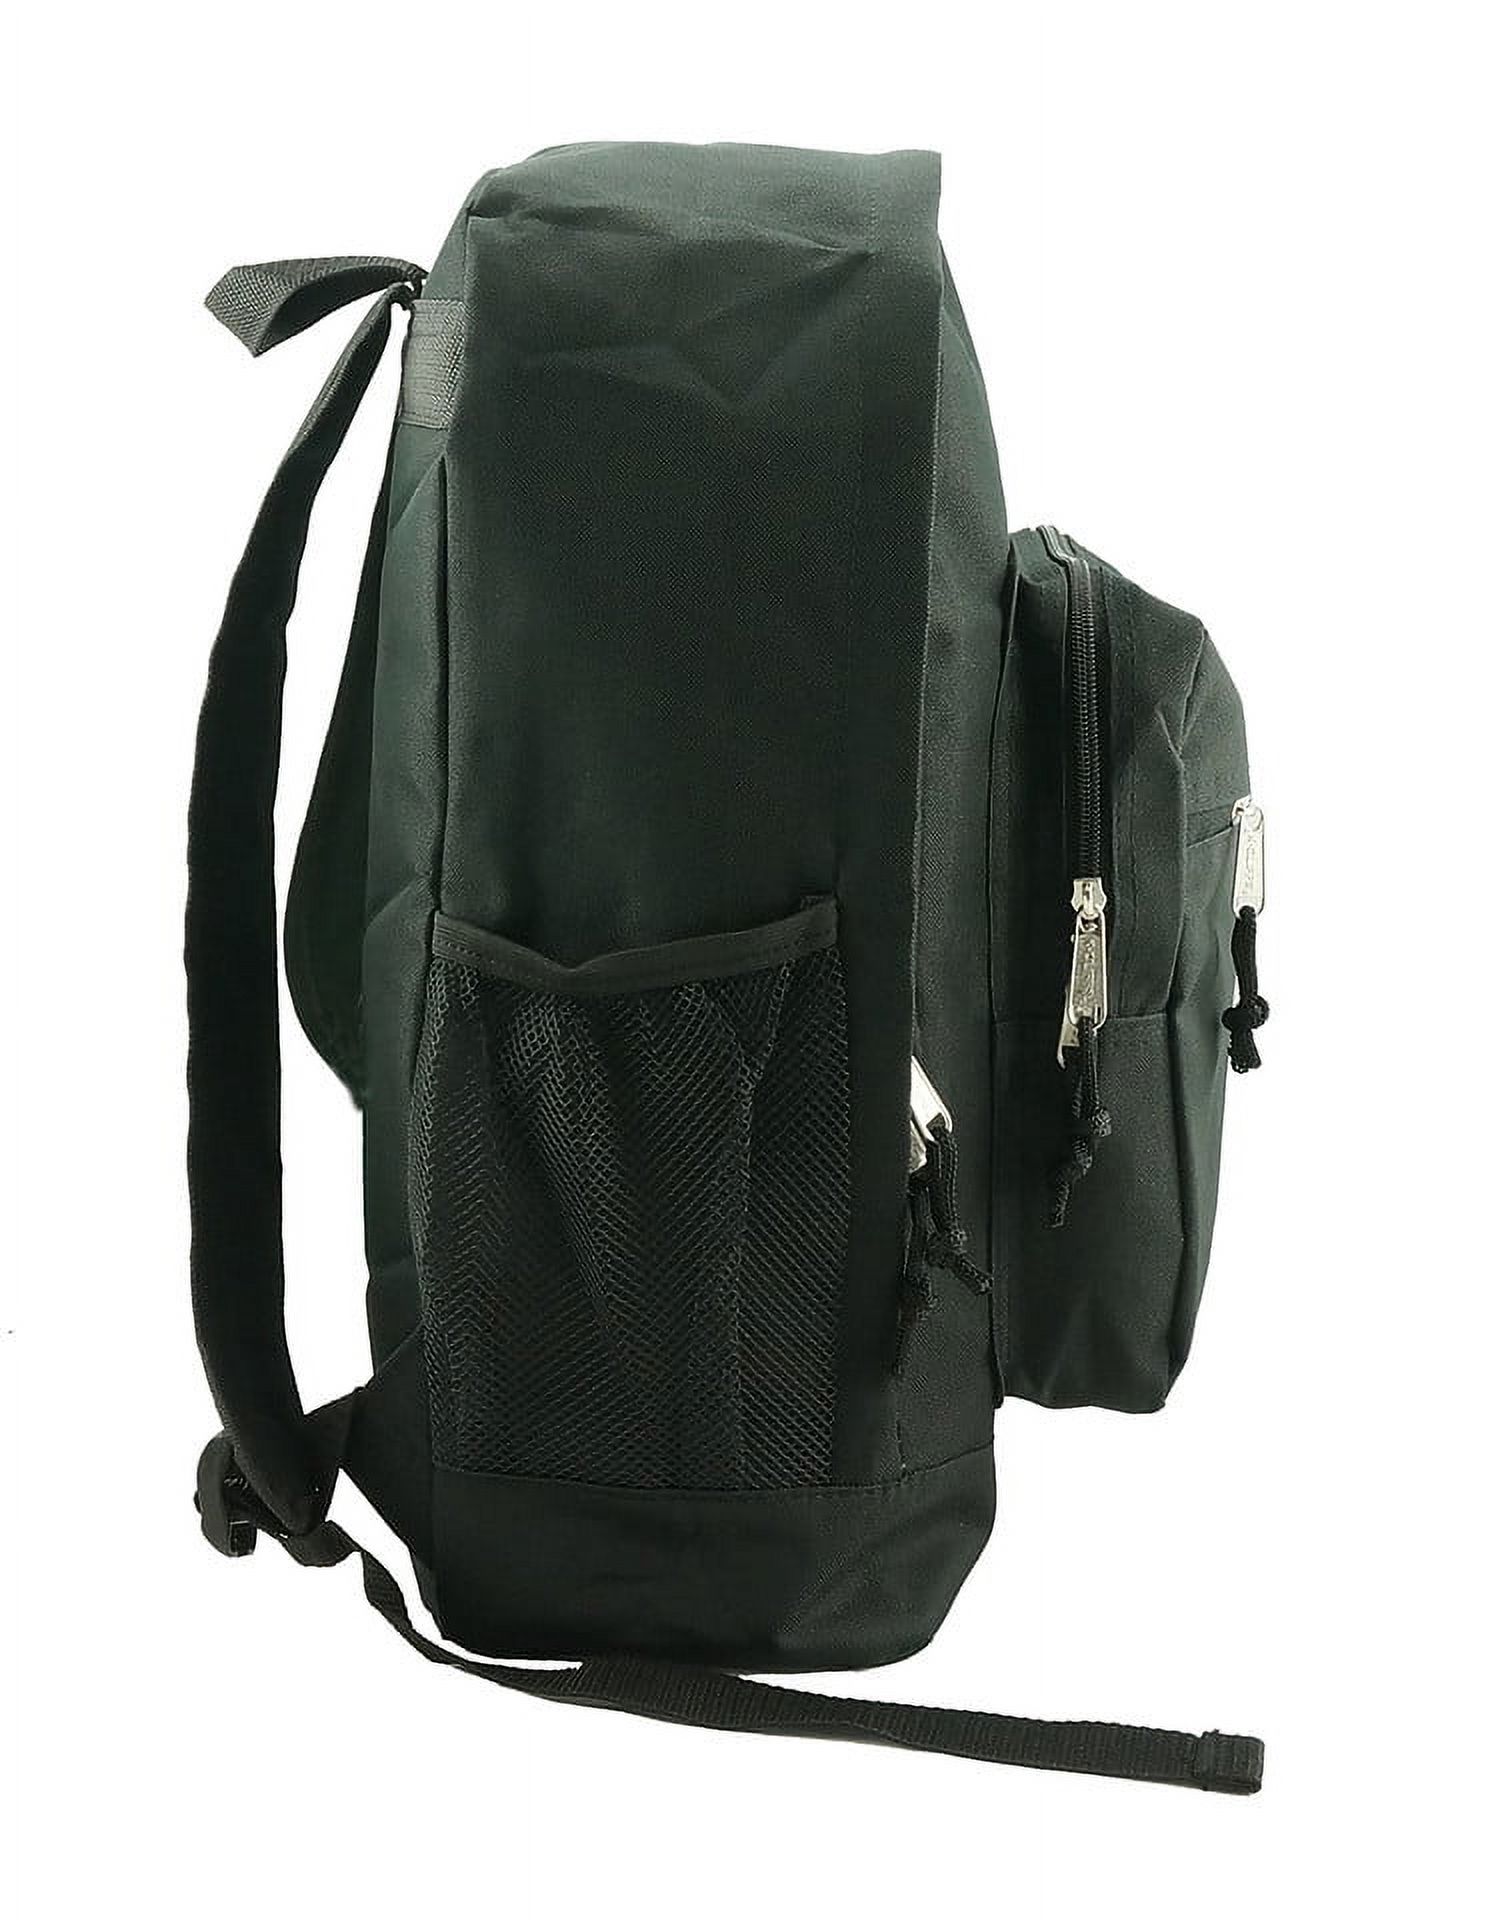 K-Cliffs Large Backpack for Kids-College Students , Lightweight Durable Travel Backpack Fits 15.6 Laptops Water Resistant, Unisex Adjustable Padded Shoulder Straps  (Black) - image 4 of 5